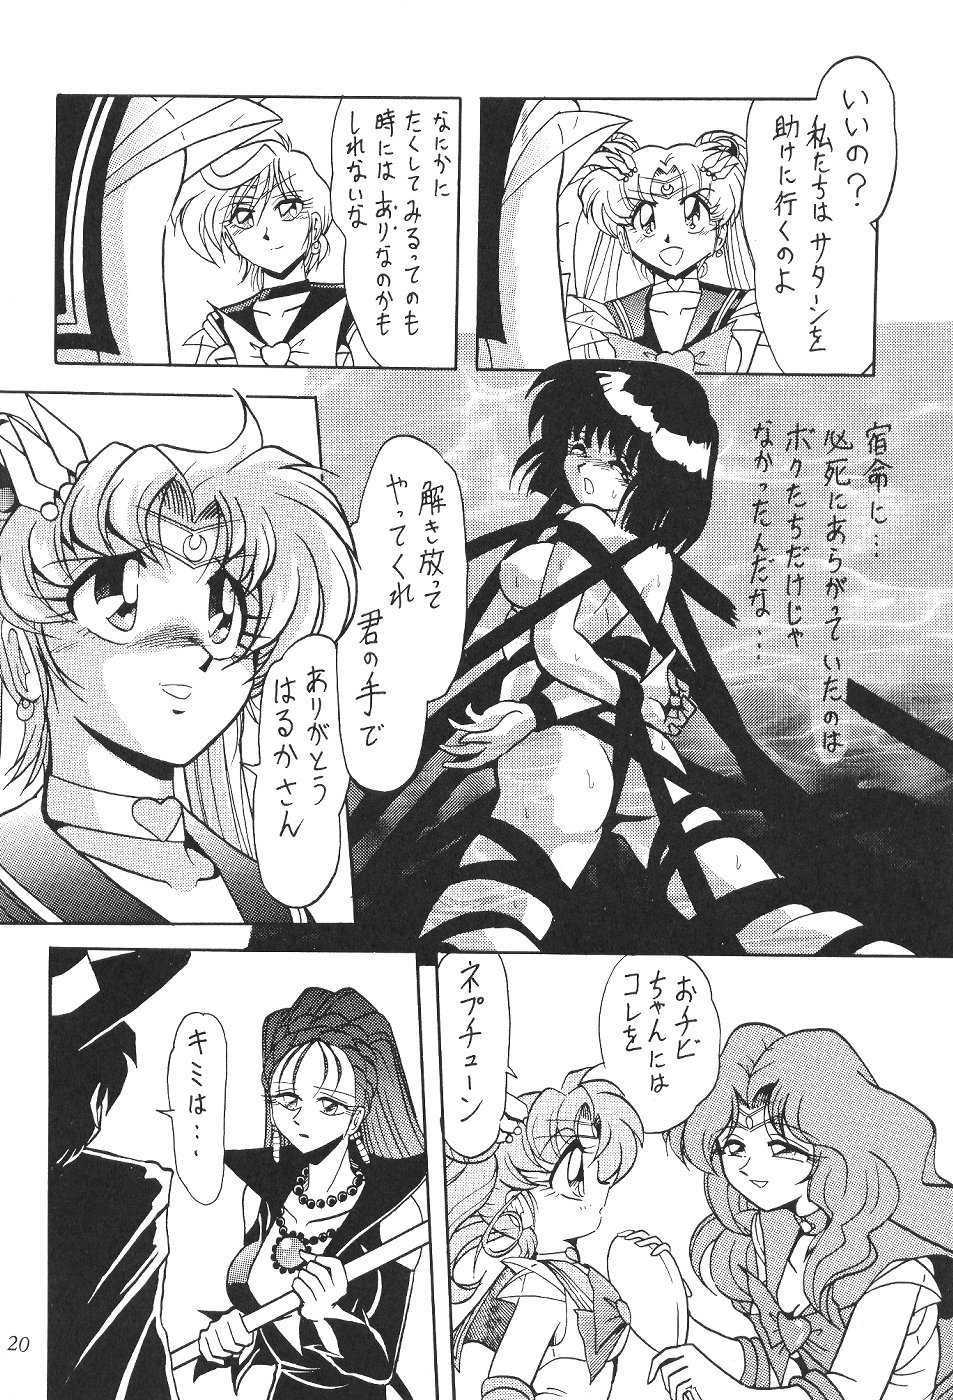 Saateiseibaazutoriito 2D Shooting - Silent Saturn 11 (Sailor Moon) 